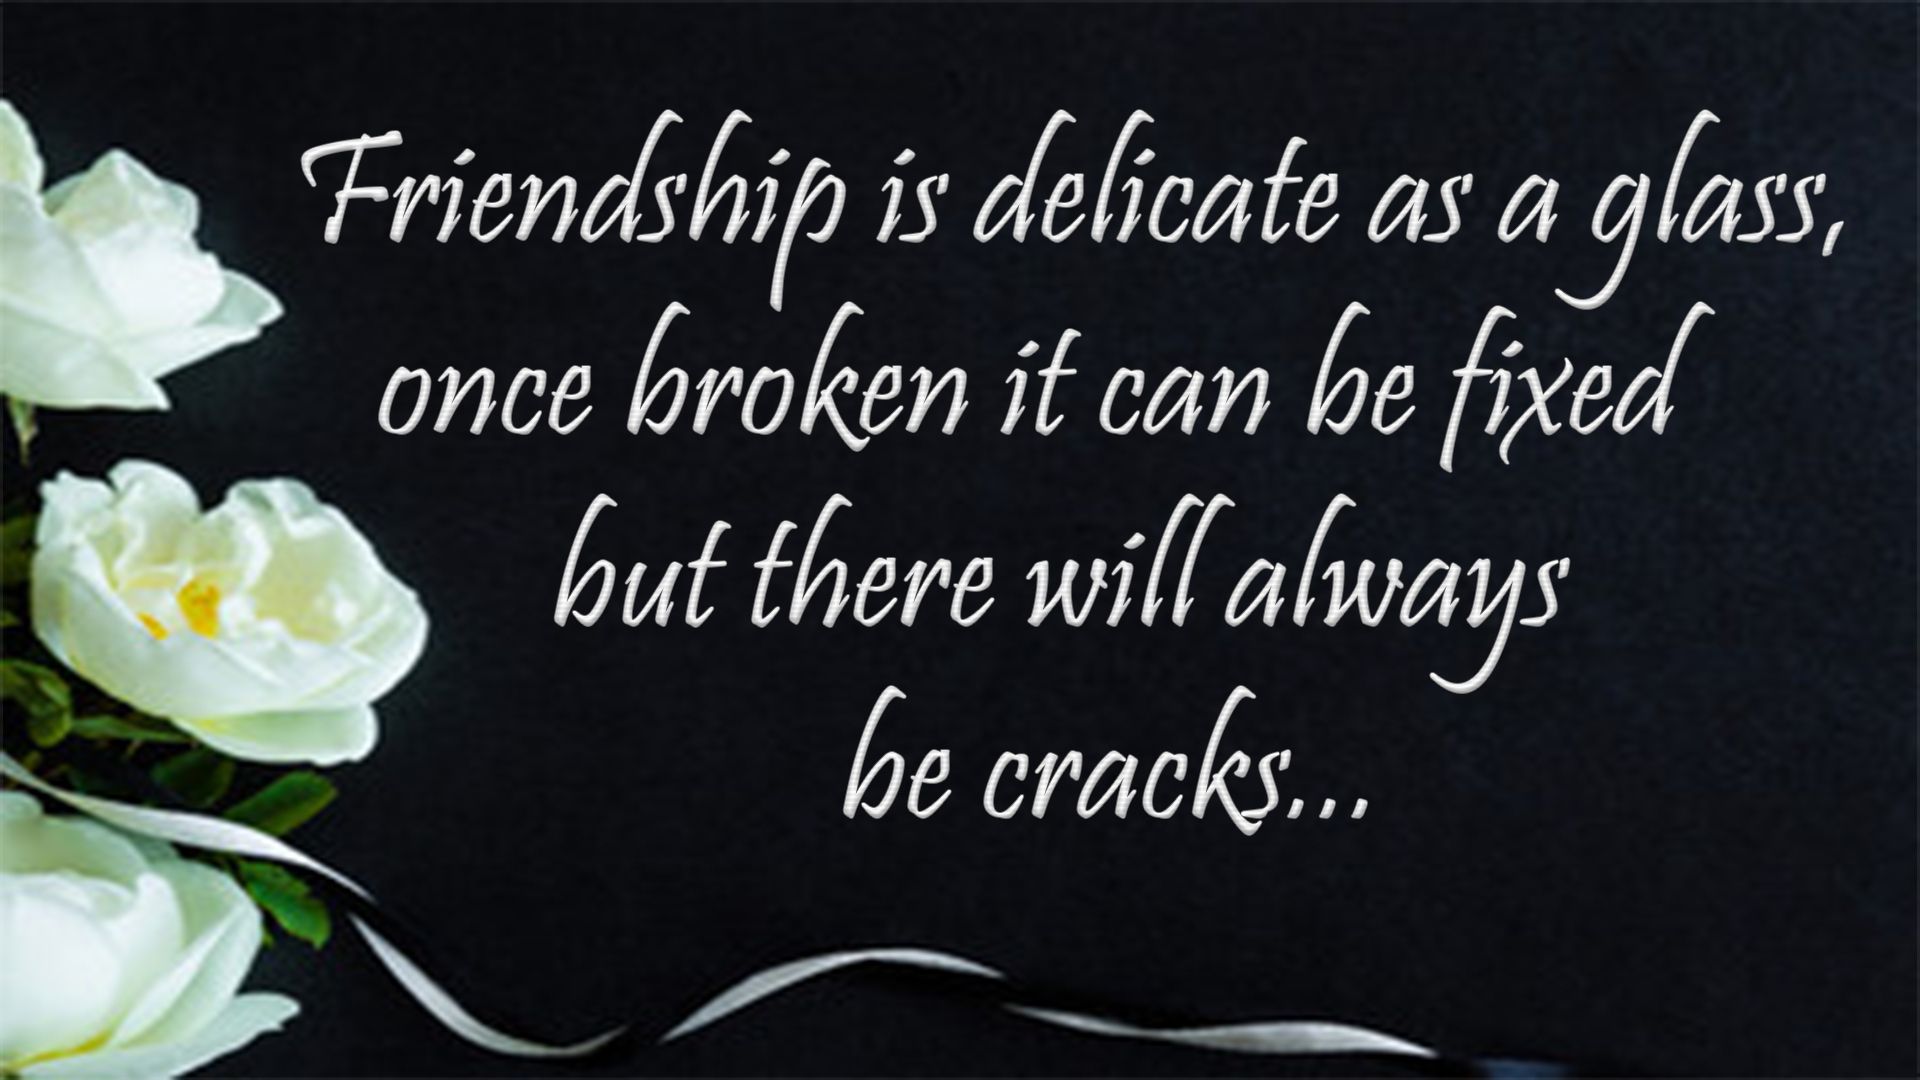 Friend sad broken friendship quotes in